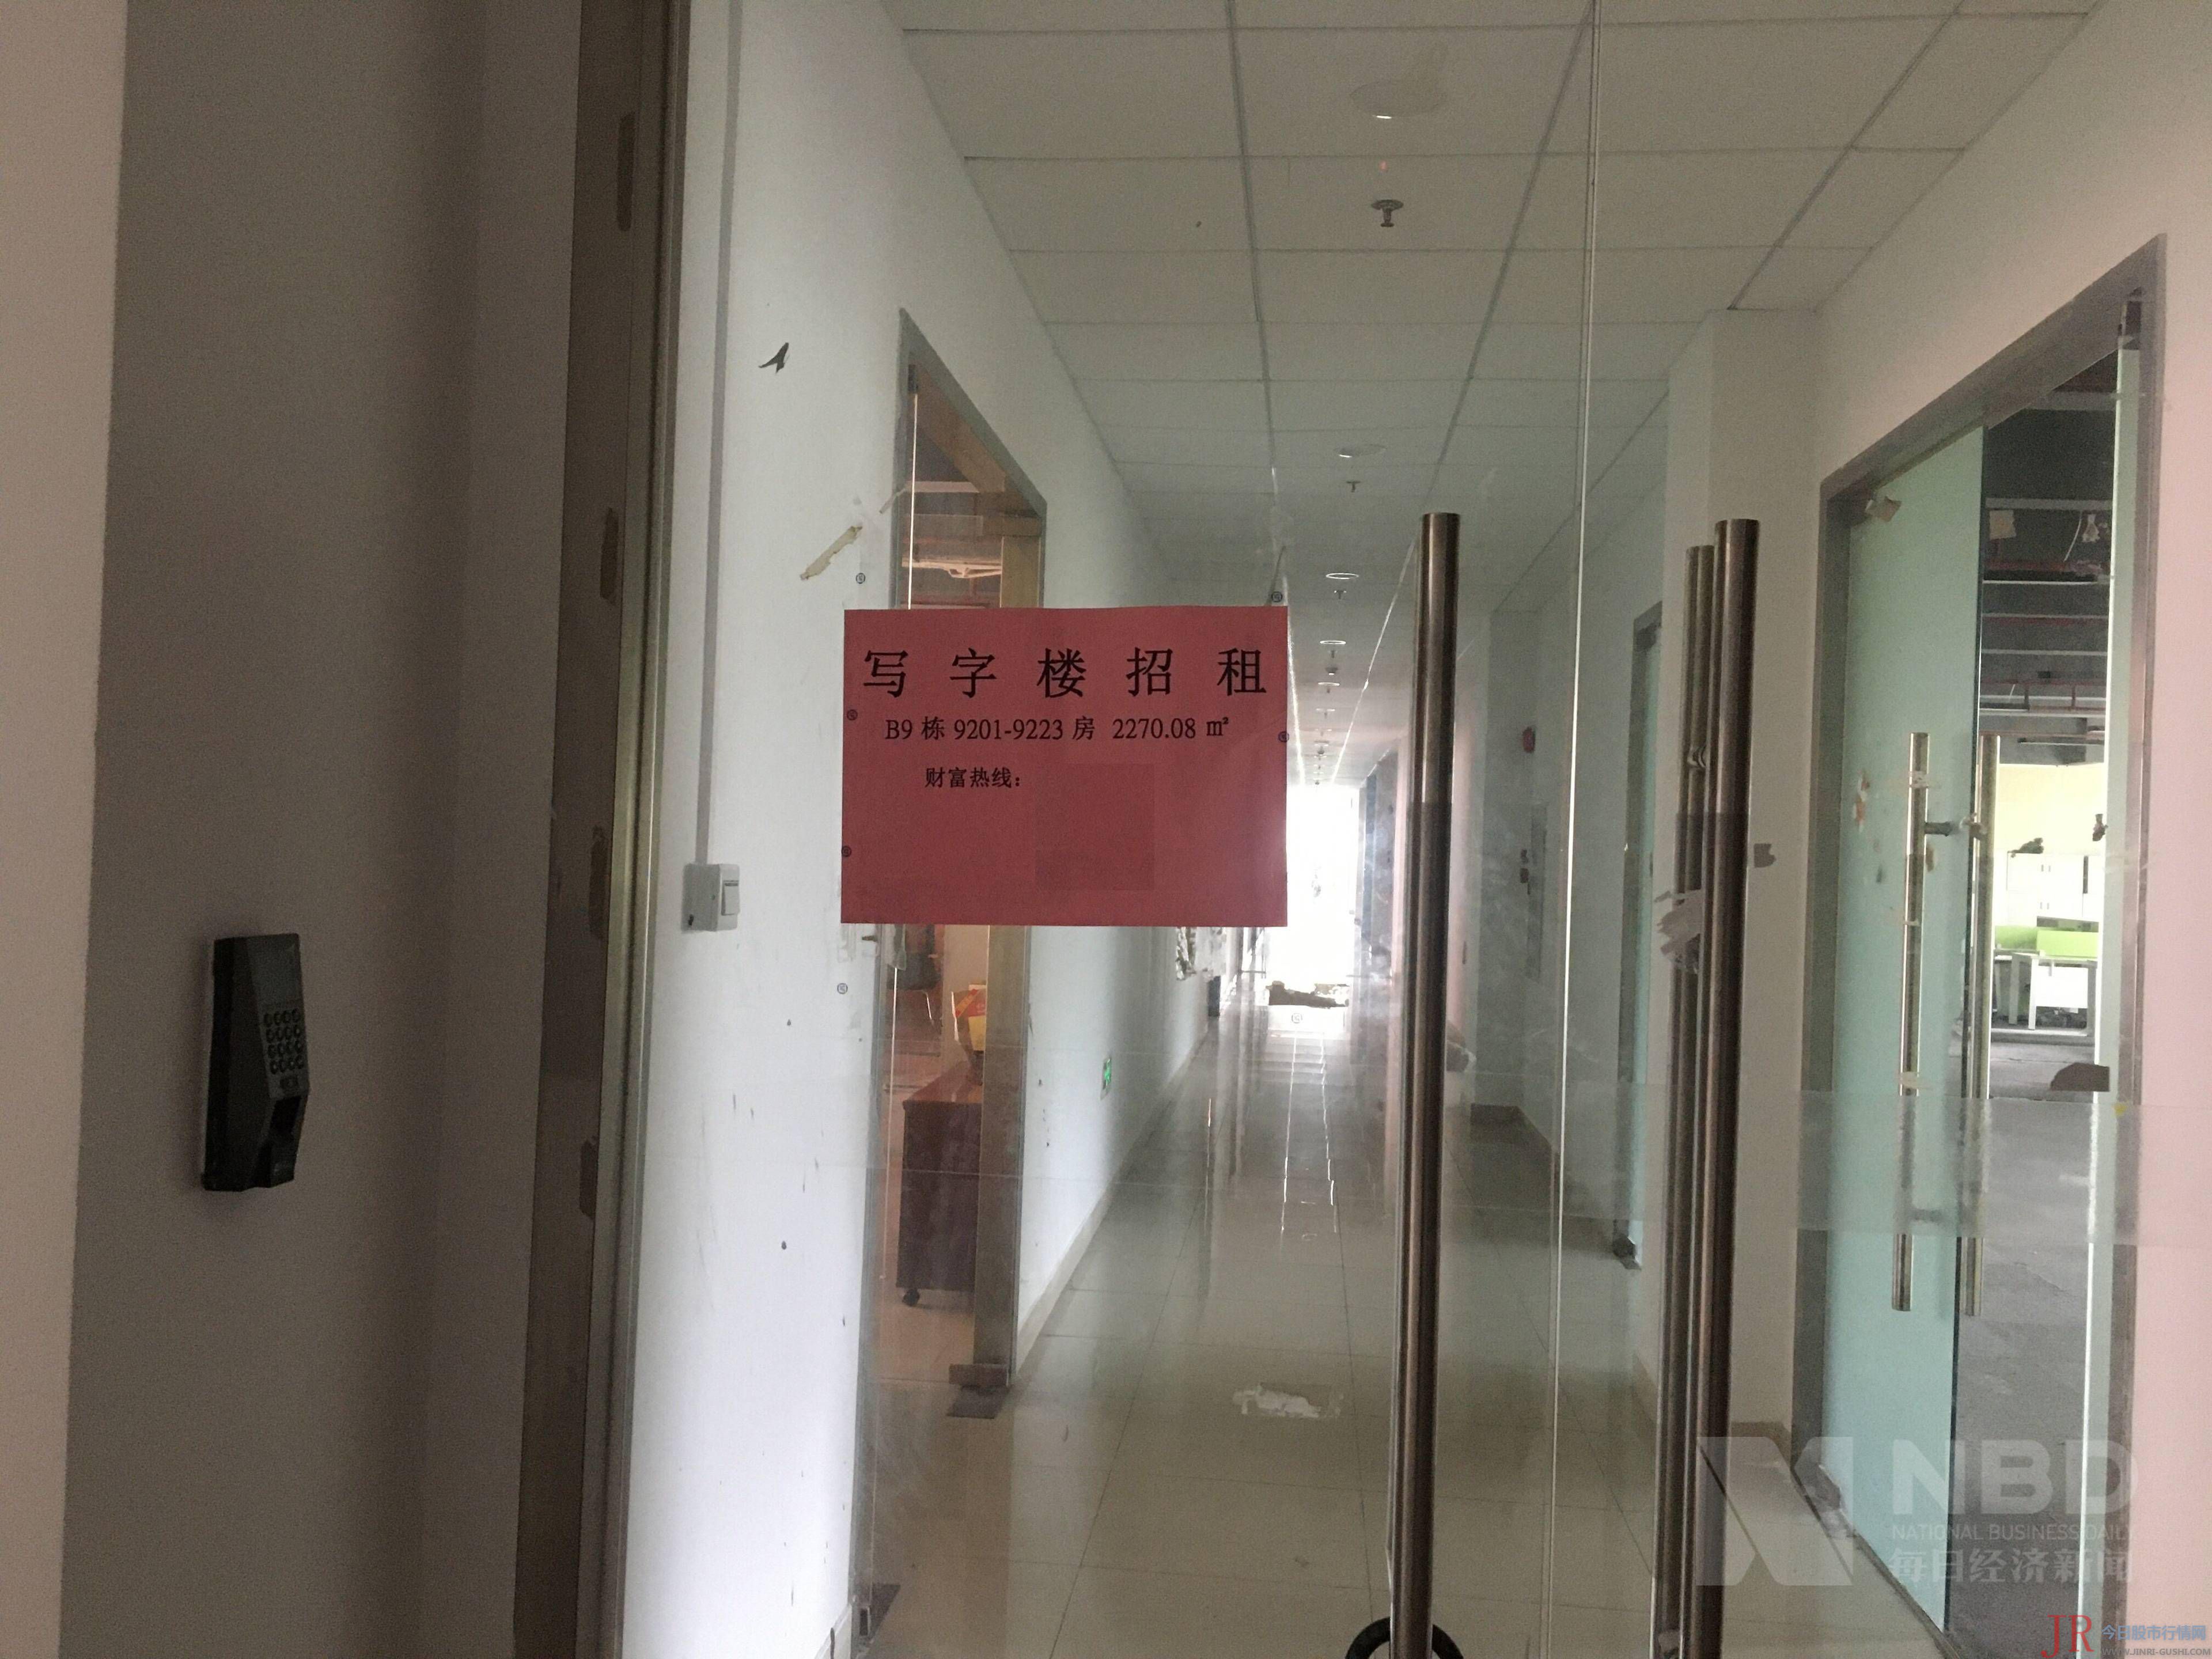 目前其位于广州市天河区的总部已经人去楼空